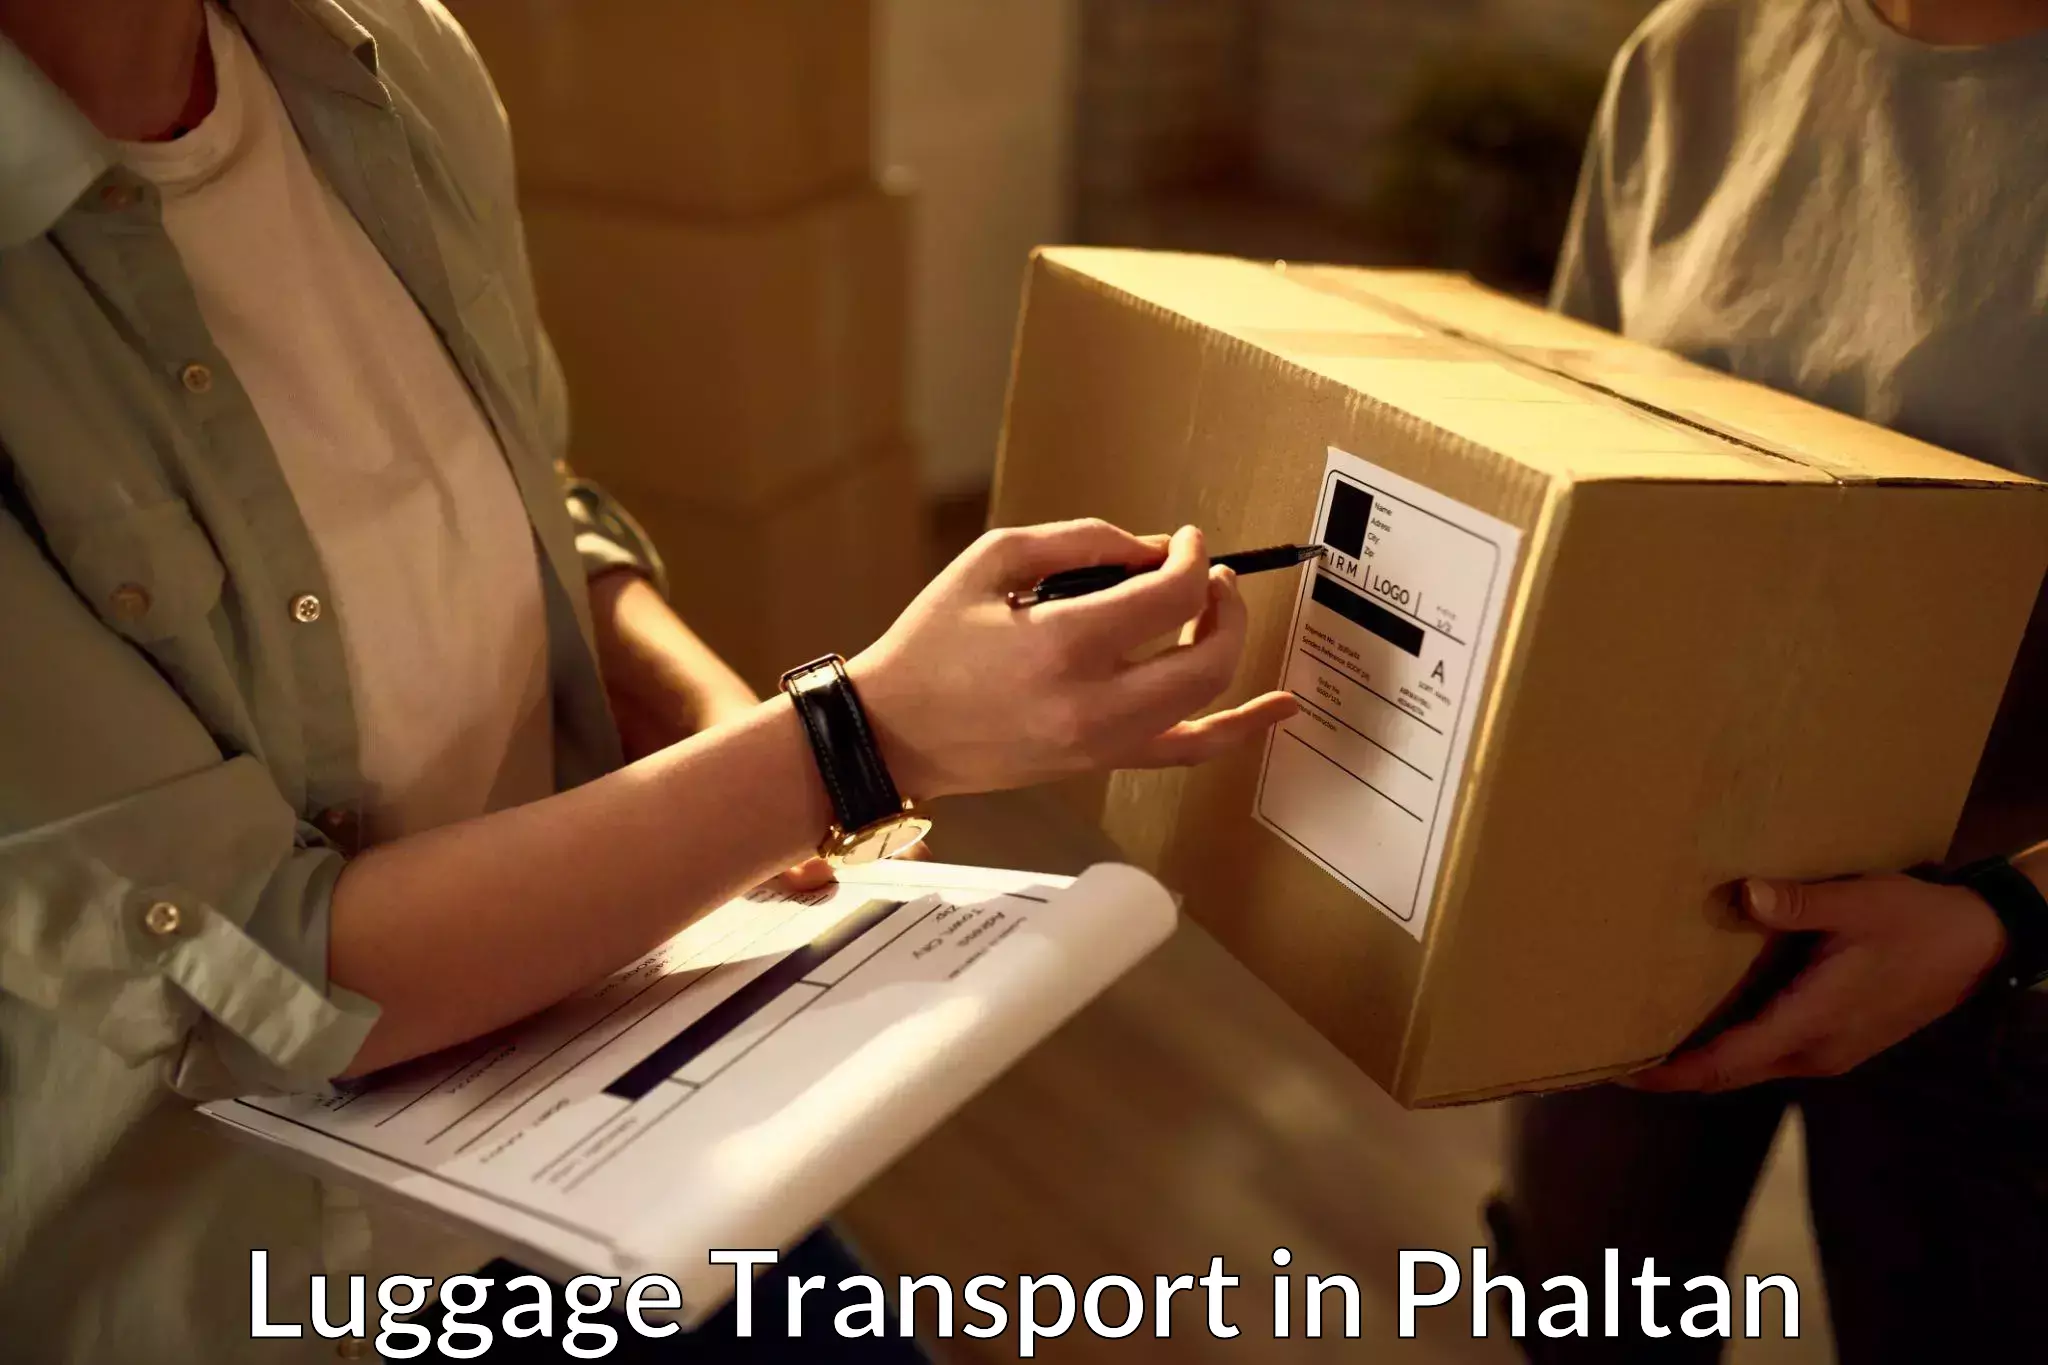 Luggage transfer service in Phaltan